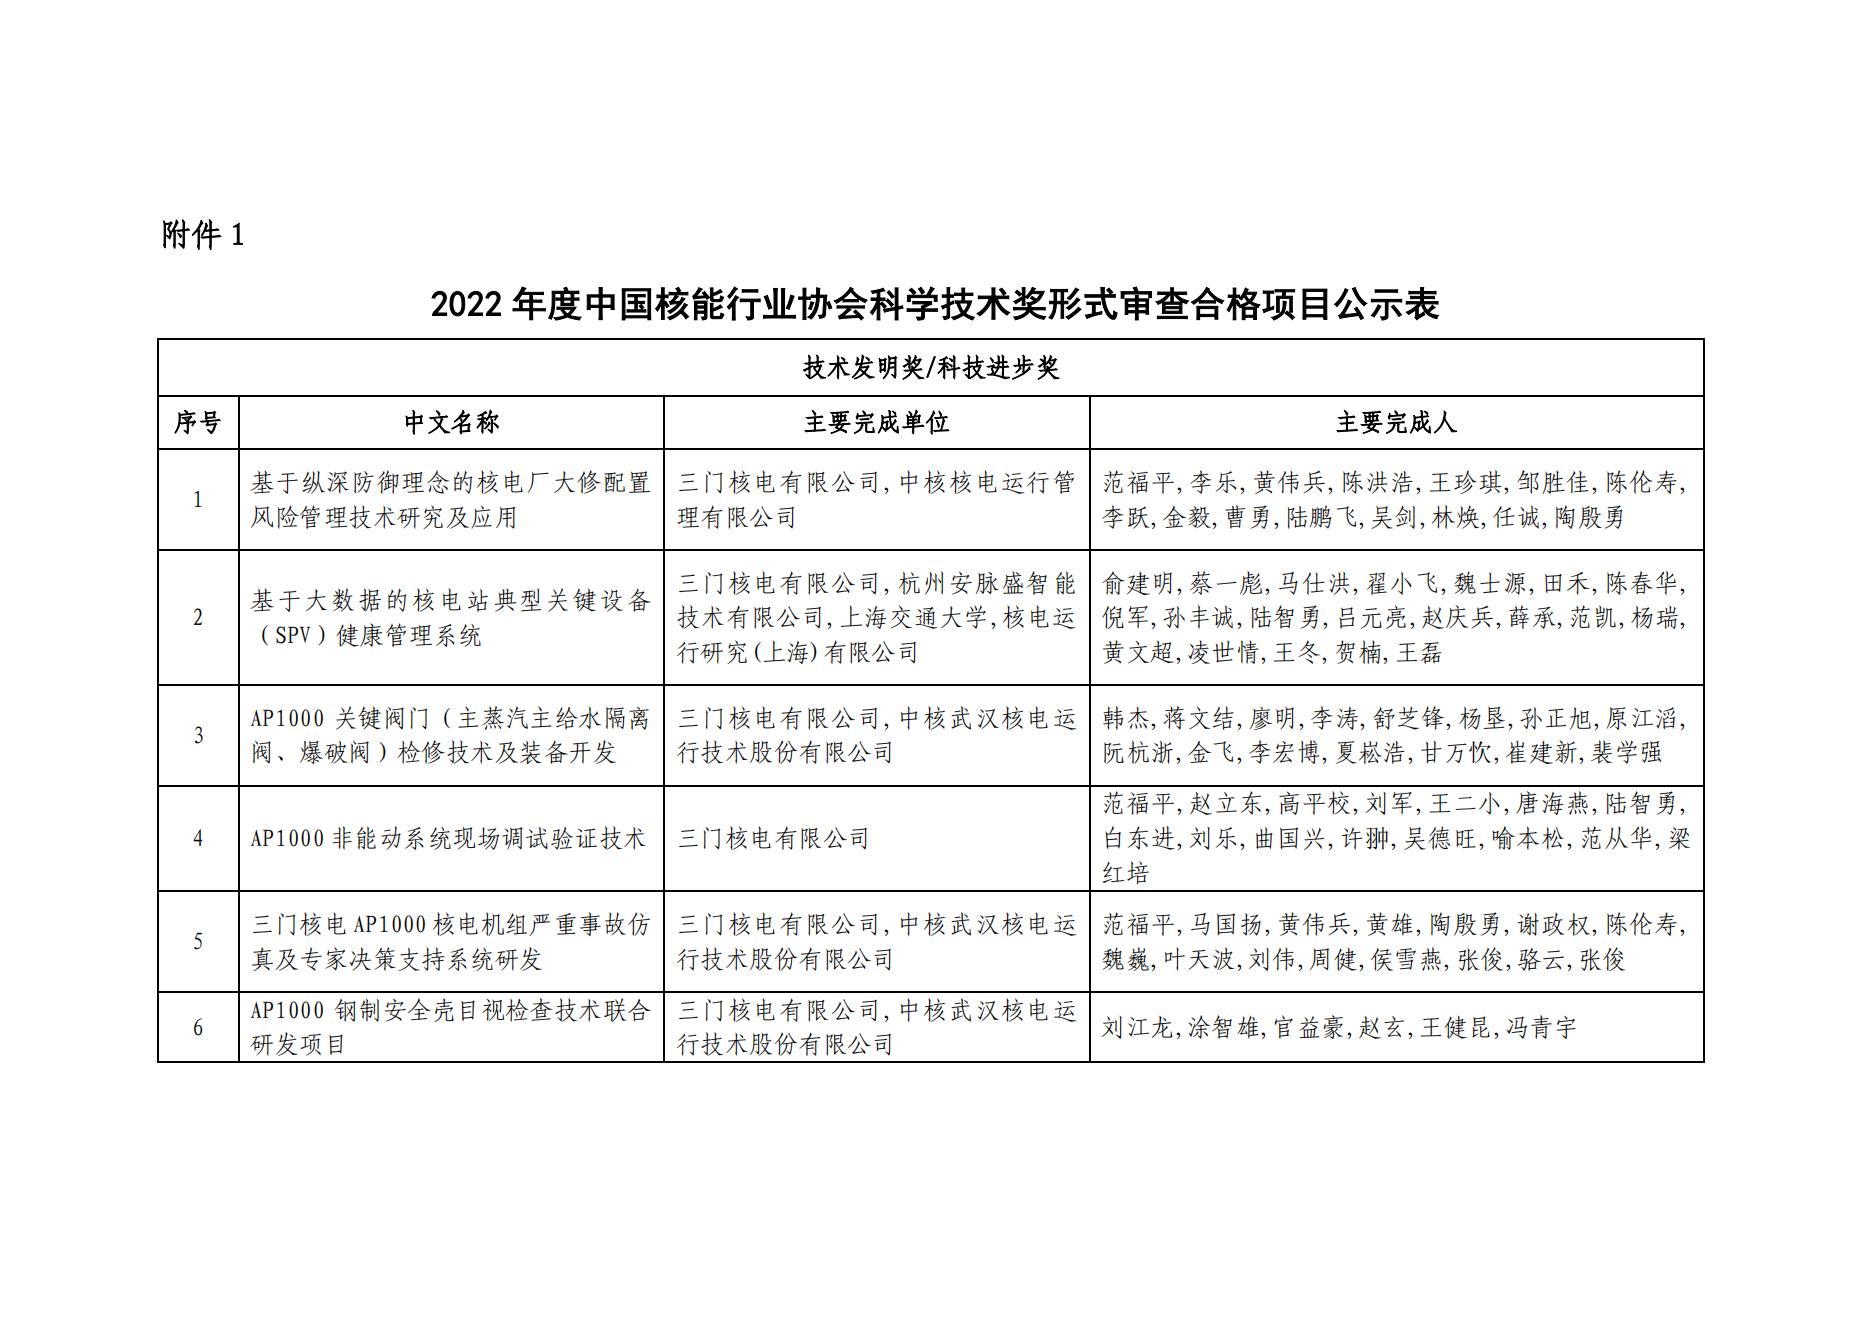 2022年度中国核能行业协会科学技术奖形式审查合格项目公示_01.jpg